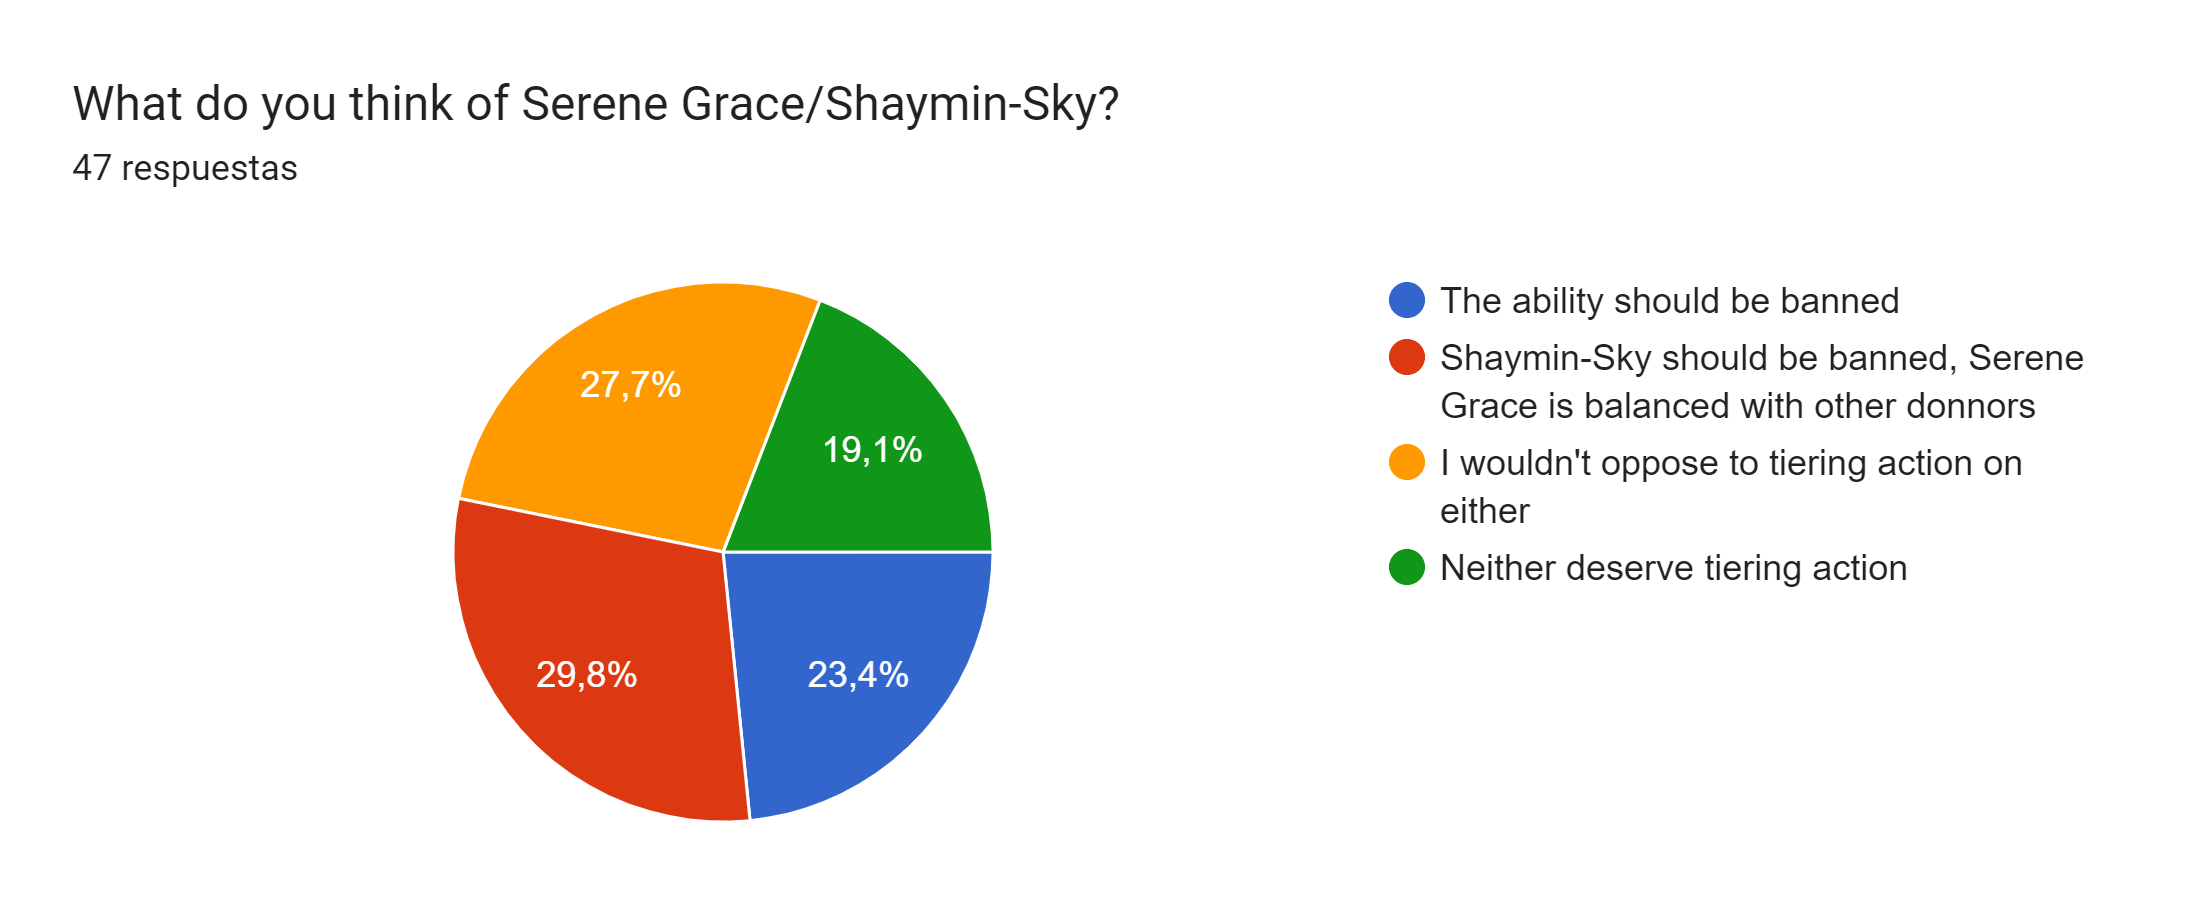 GALE WINGS + SERENE GRACE SHAYMIN-SKY BREAKS THE